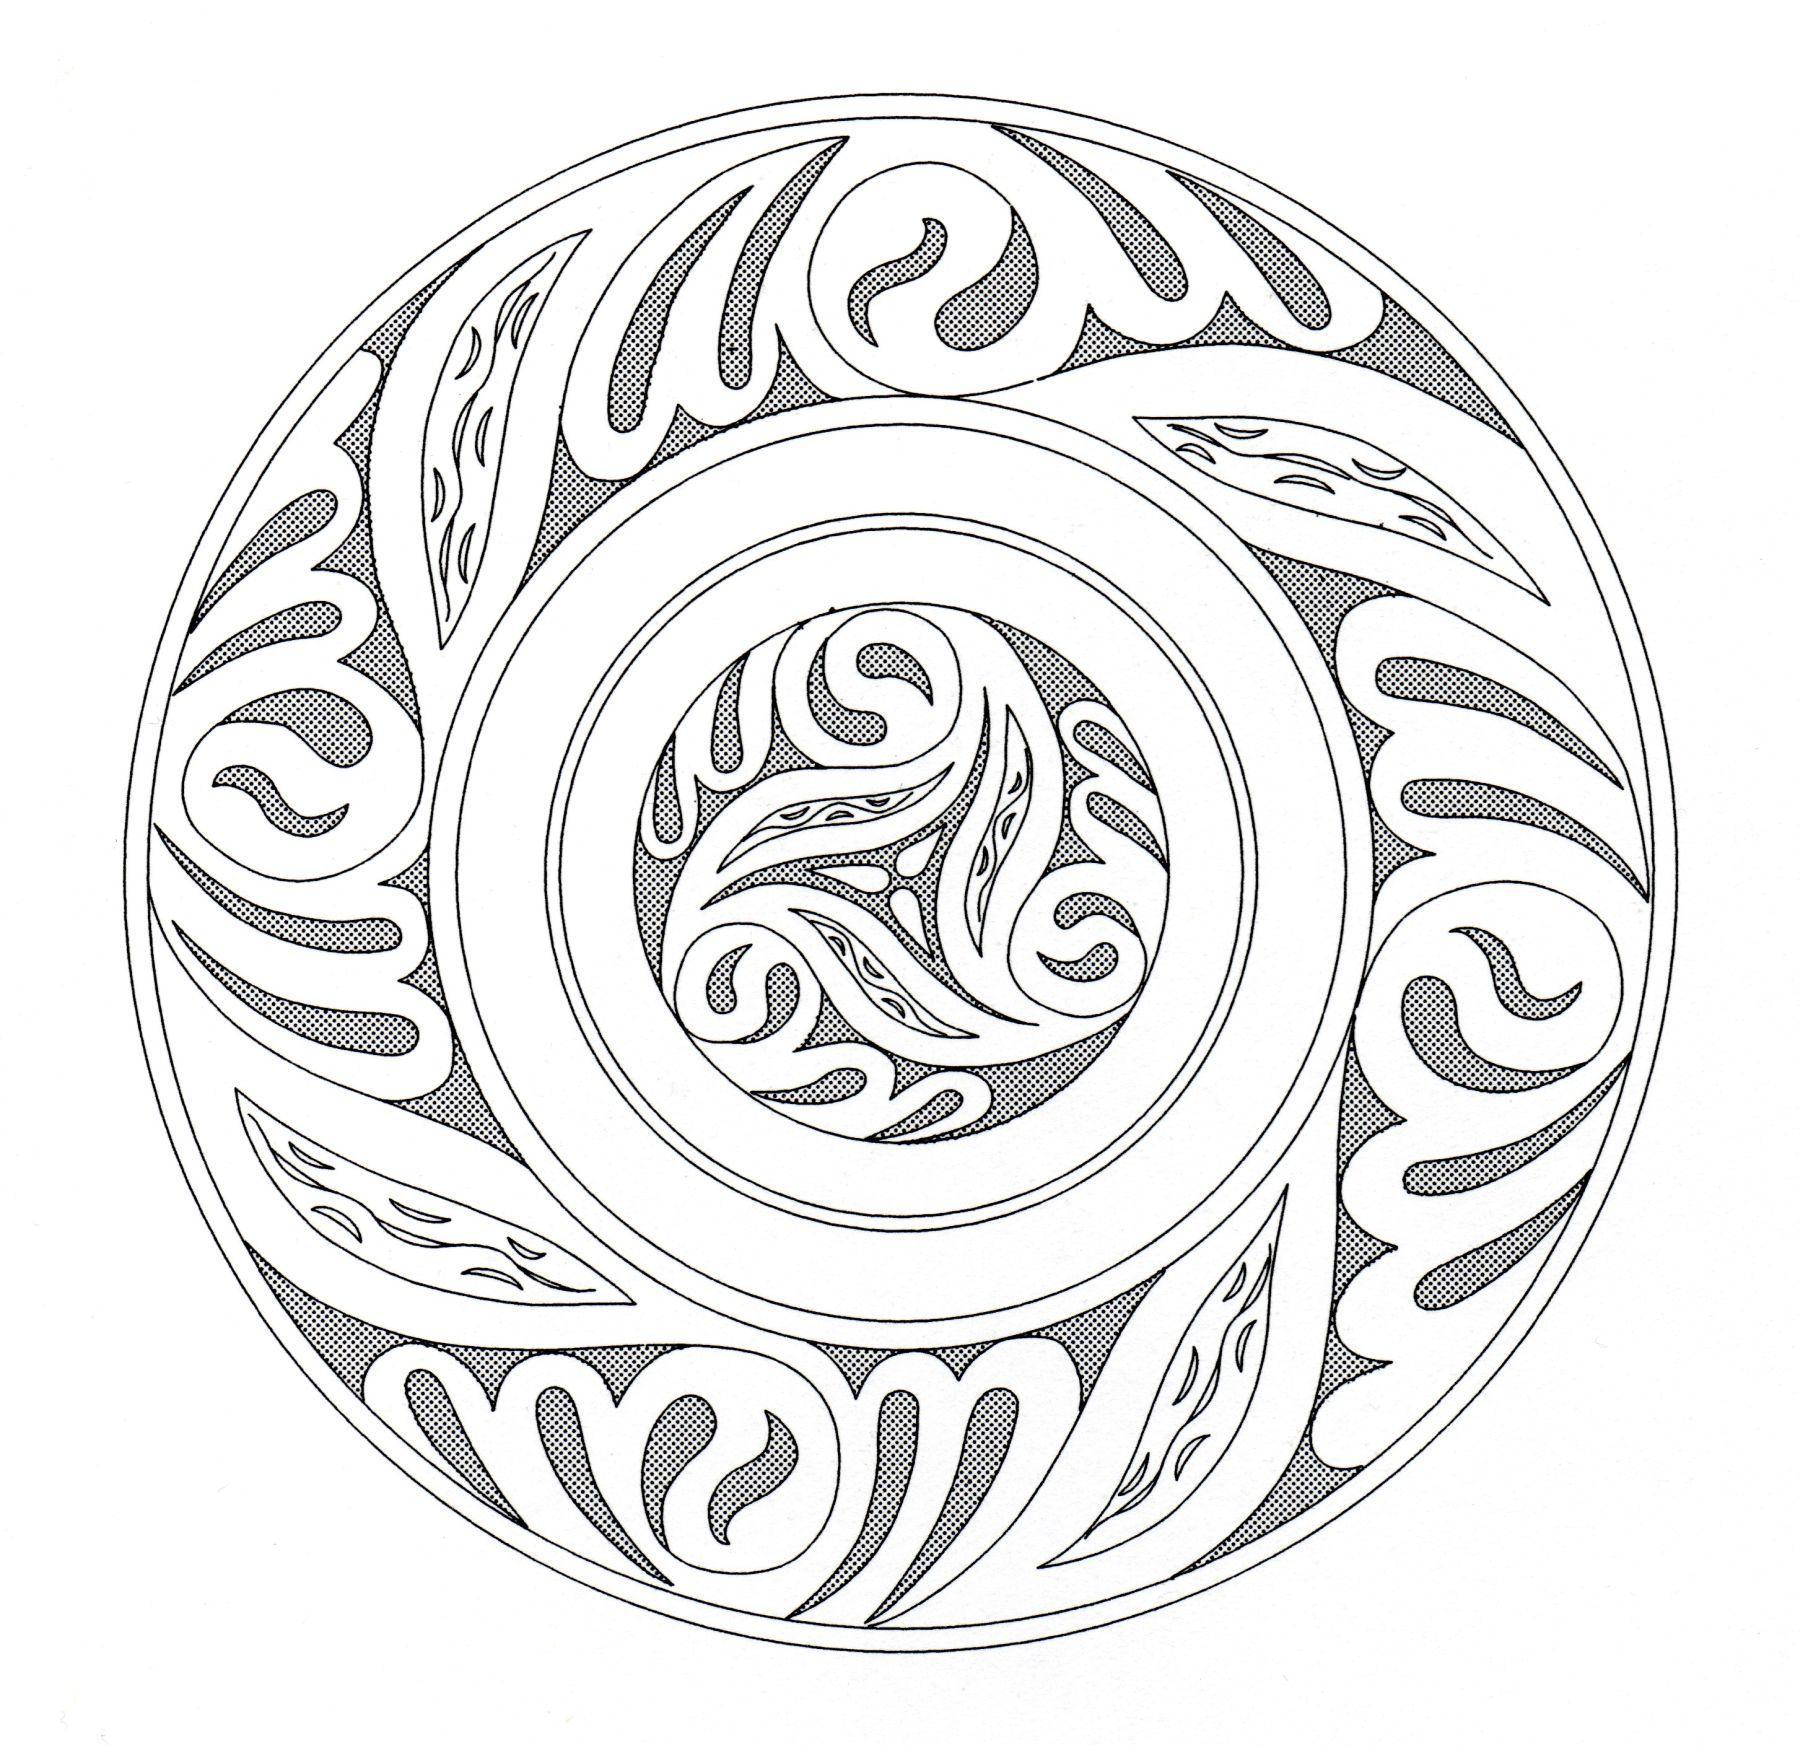 Art celtique ressemblant à un Mandala